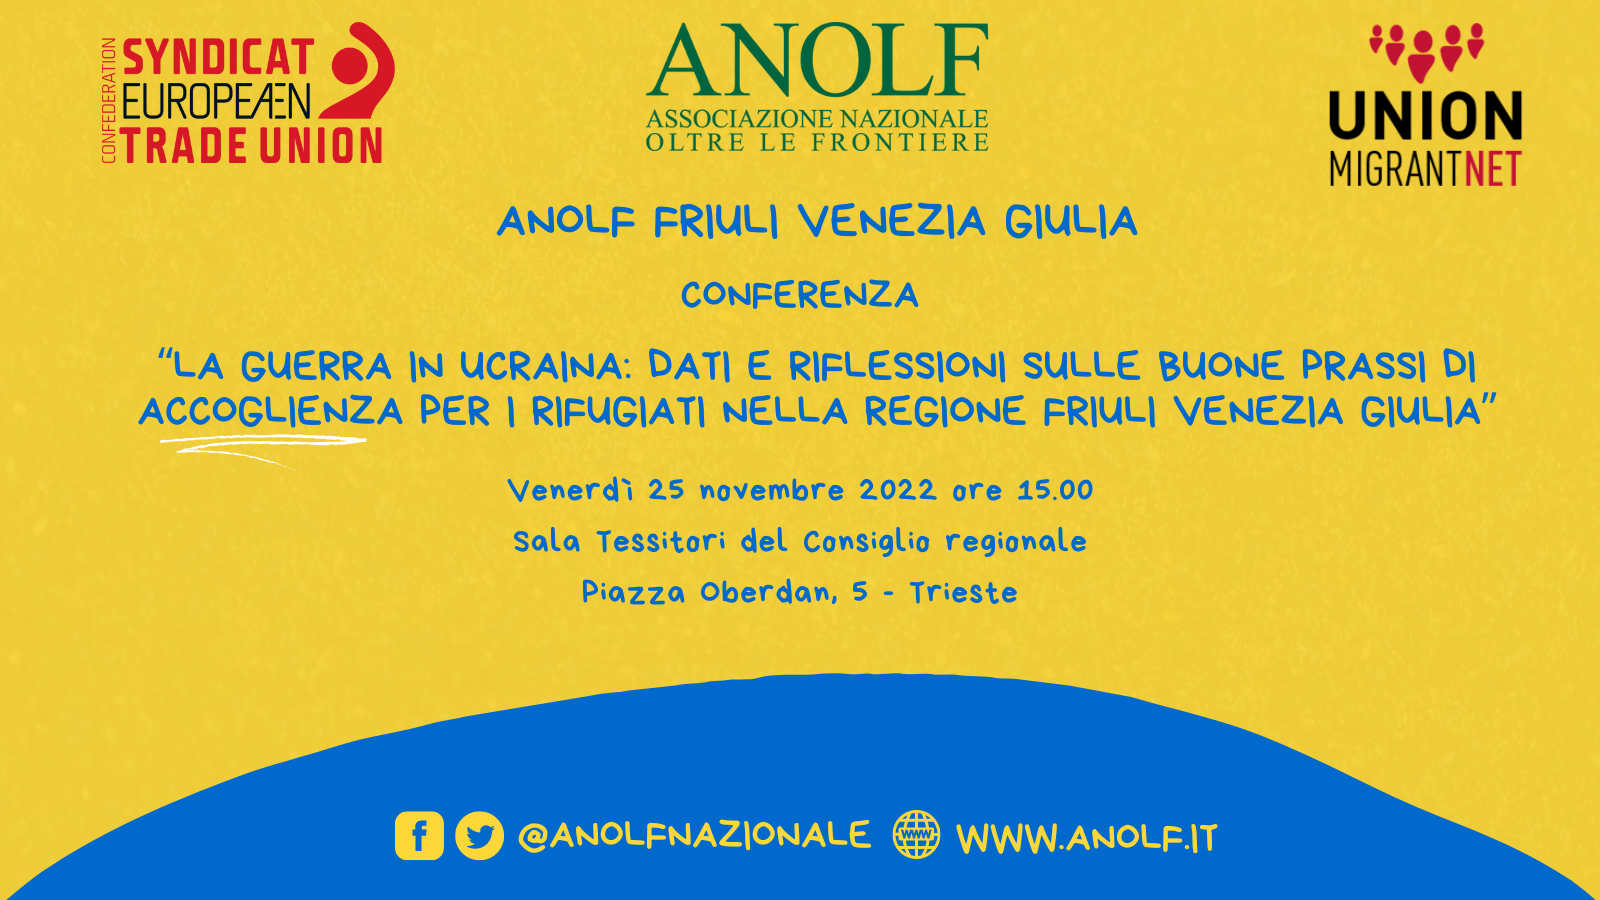 ANOLF FVG Conferenza “La guerra in Ucraina: dati e riflessioni sulle buone prassi di accoglienza per i rifugiati nella Regione Friuli Venezia Giulia”